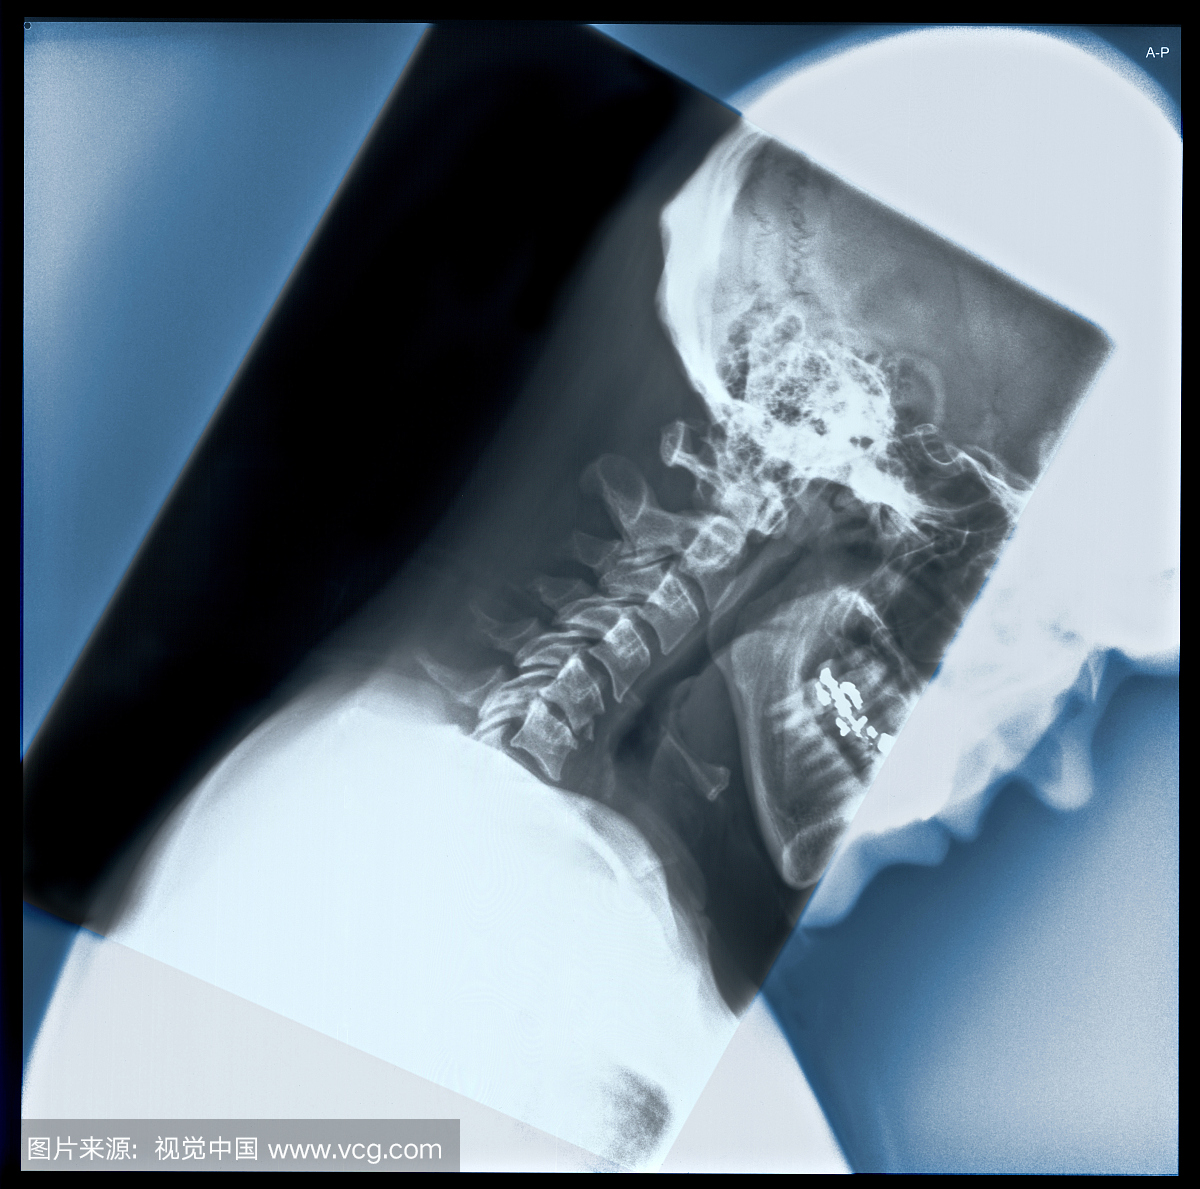 这个x射线是横向颈椎研究,以观察屈曲运动范围